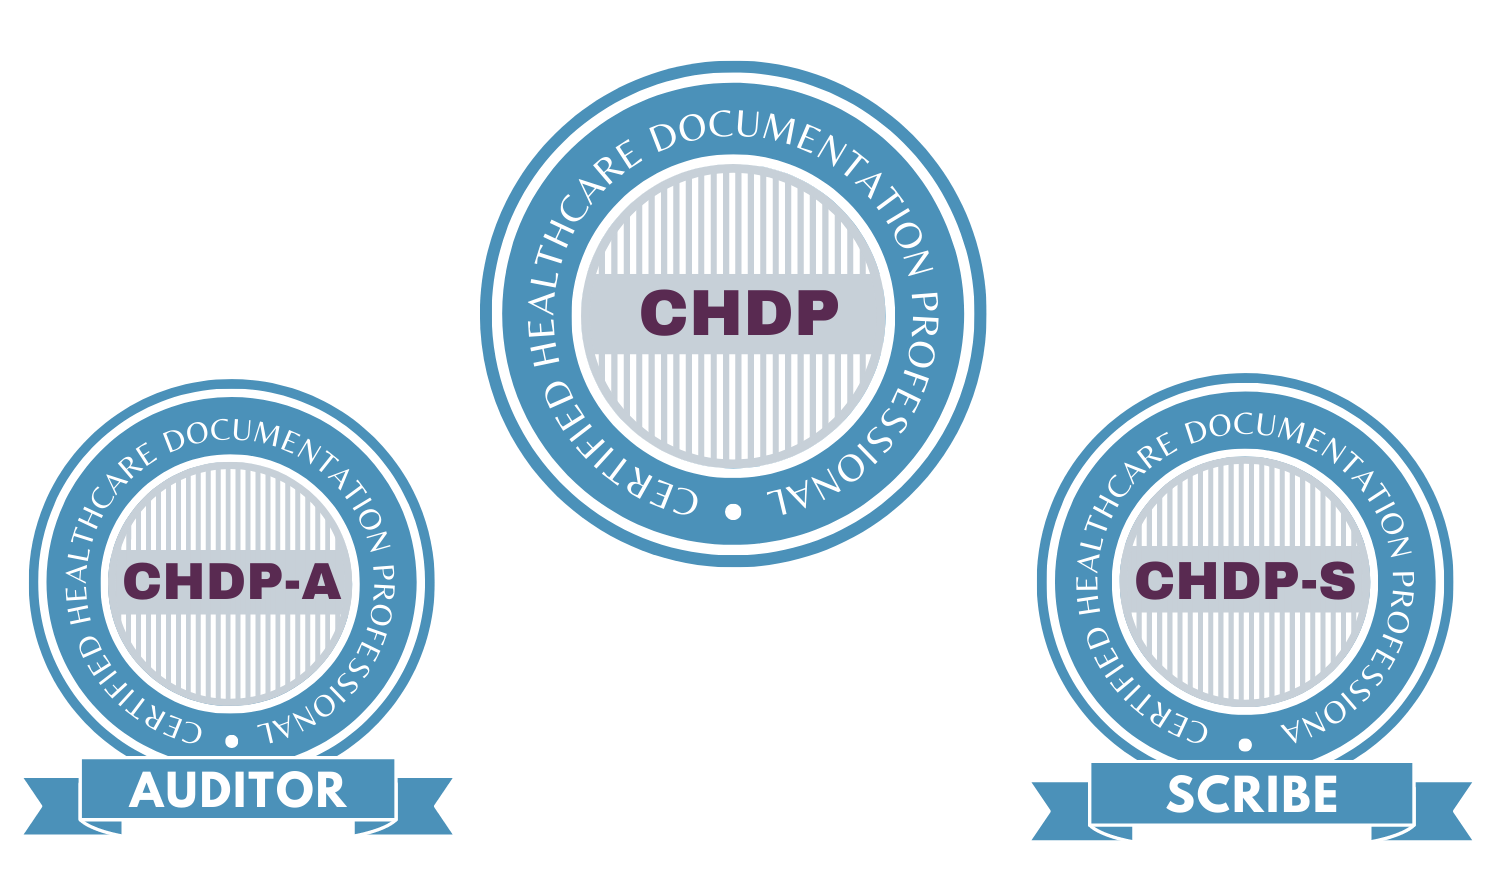 chdp logos